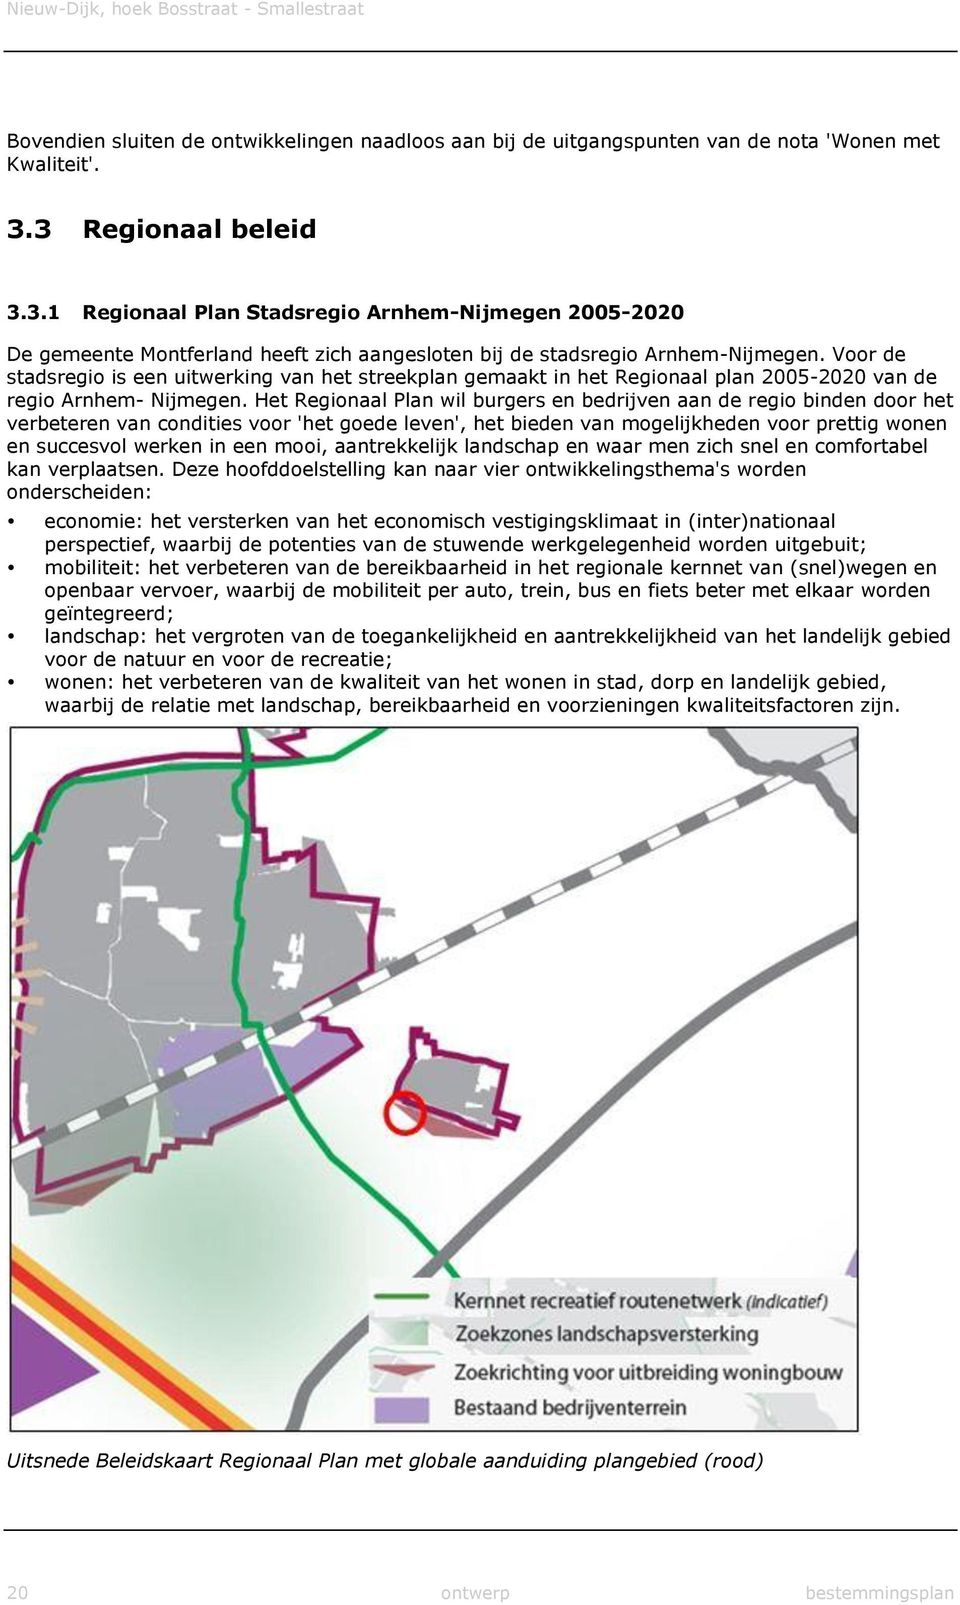 Voor de stadsregio is een uitwerking van het streekplan gemaakt in het Regionaal plan 2005-2020 van de regio Arnhem- Nijmegen.